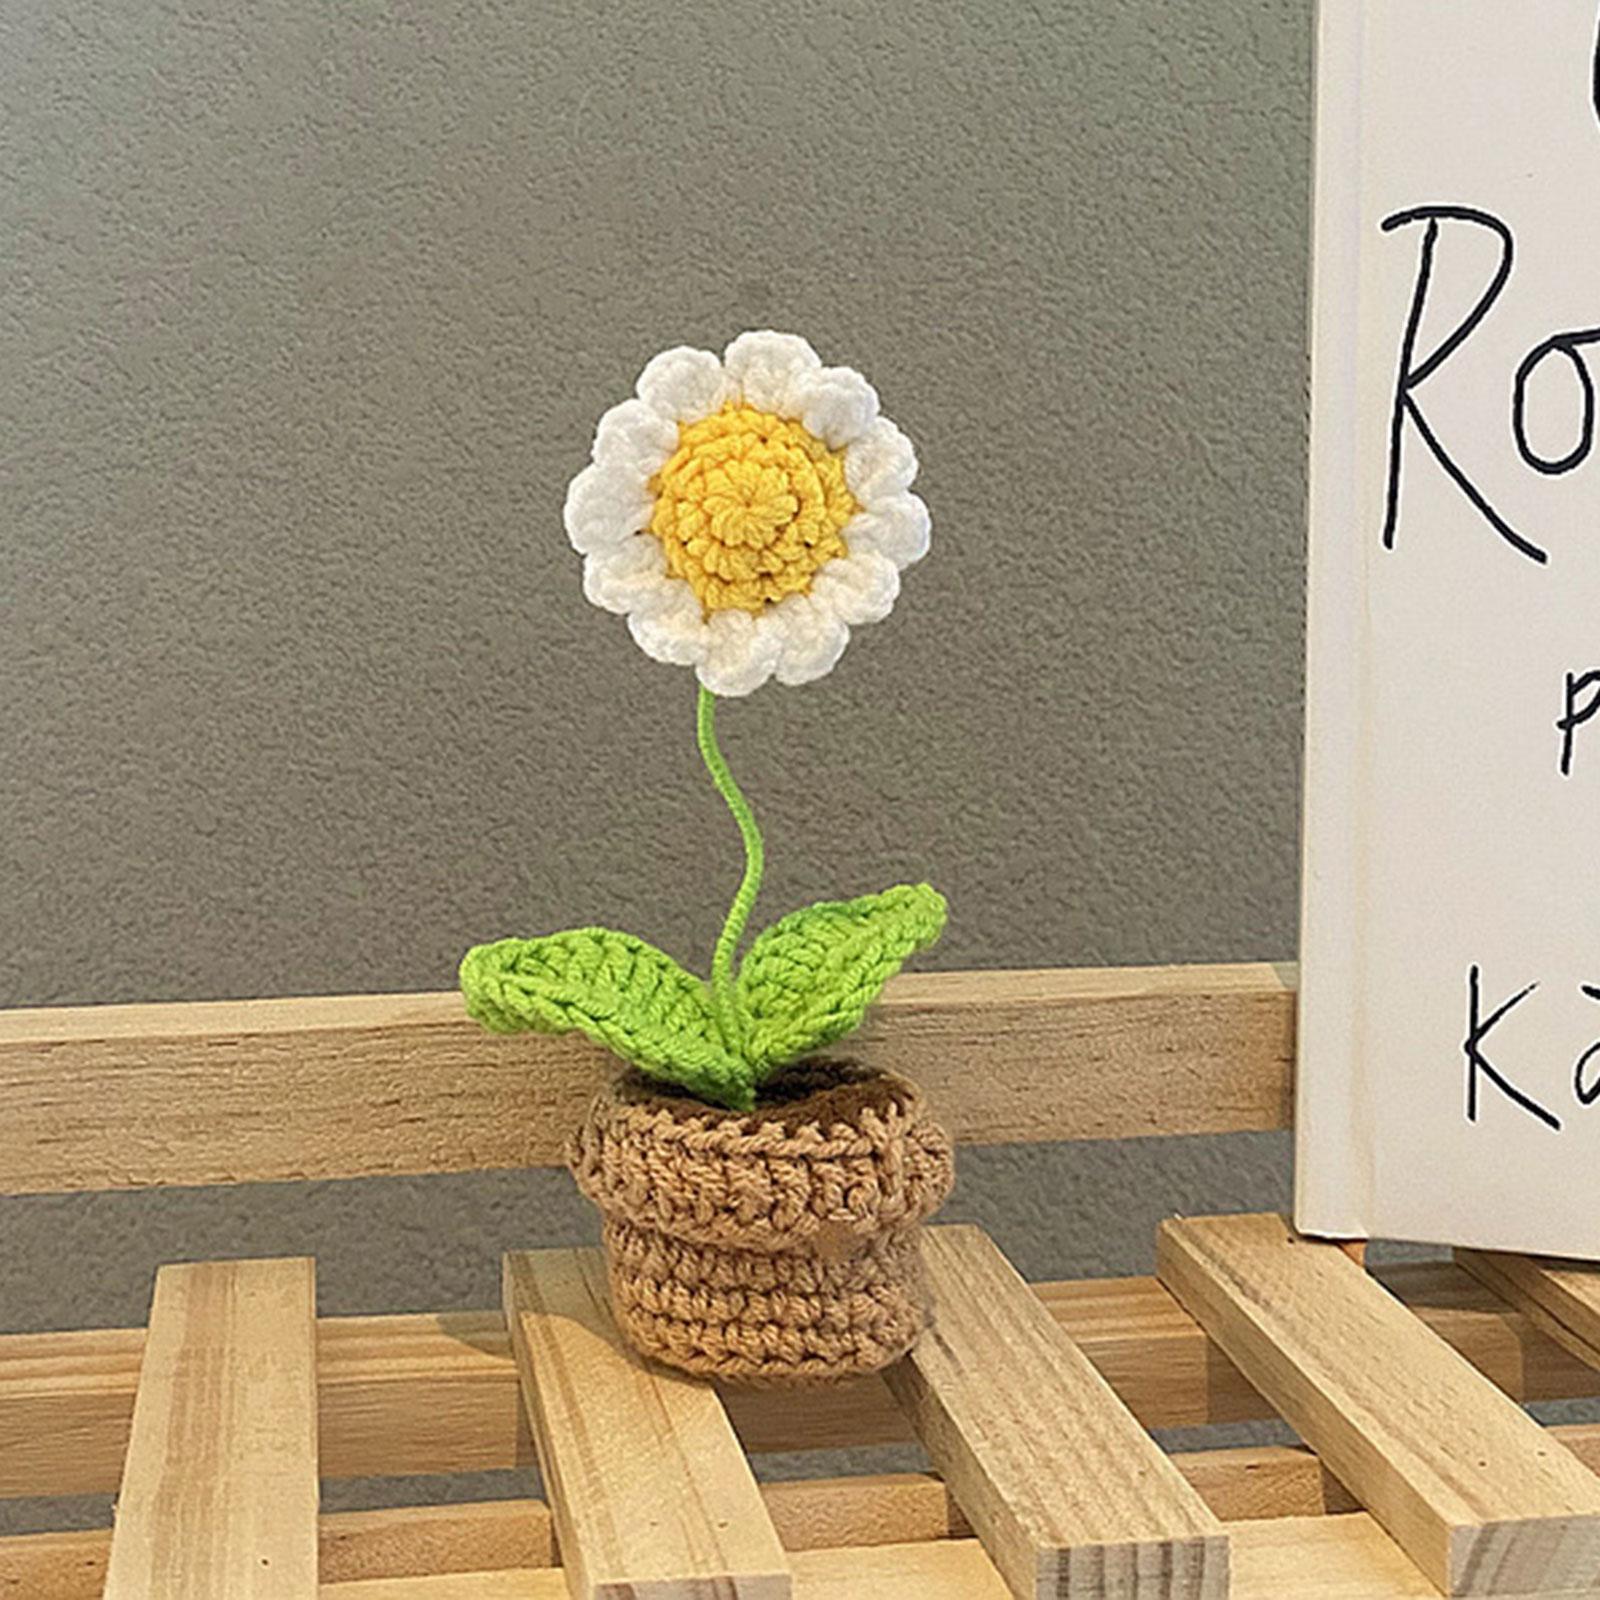 Handmade DIY Beginner Crochet Kit for Adults and Kids Includes Yarn, Hook White Sunflower